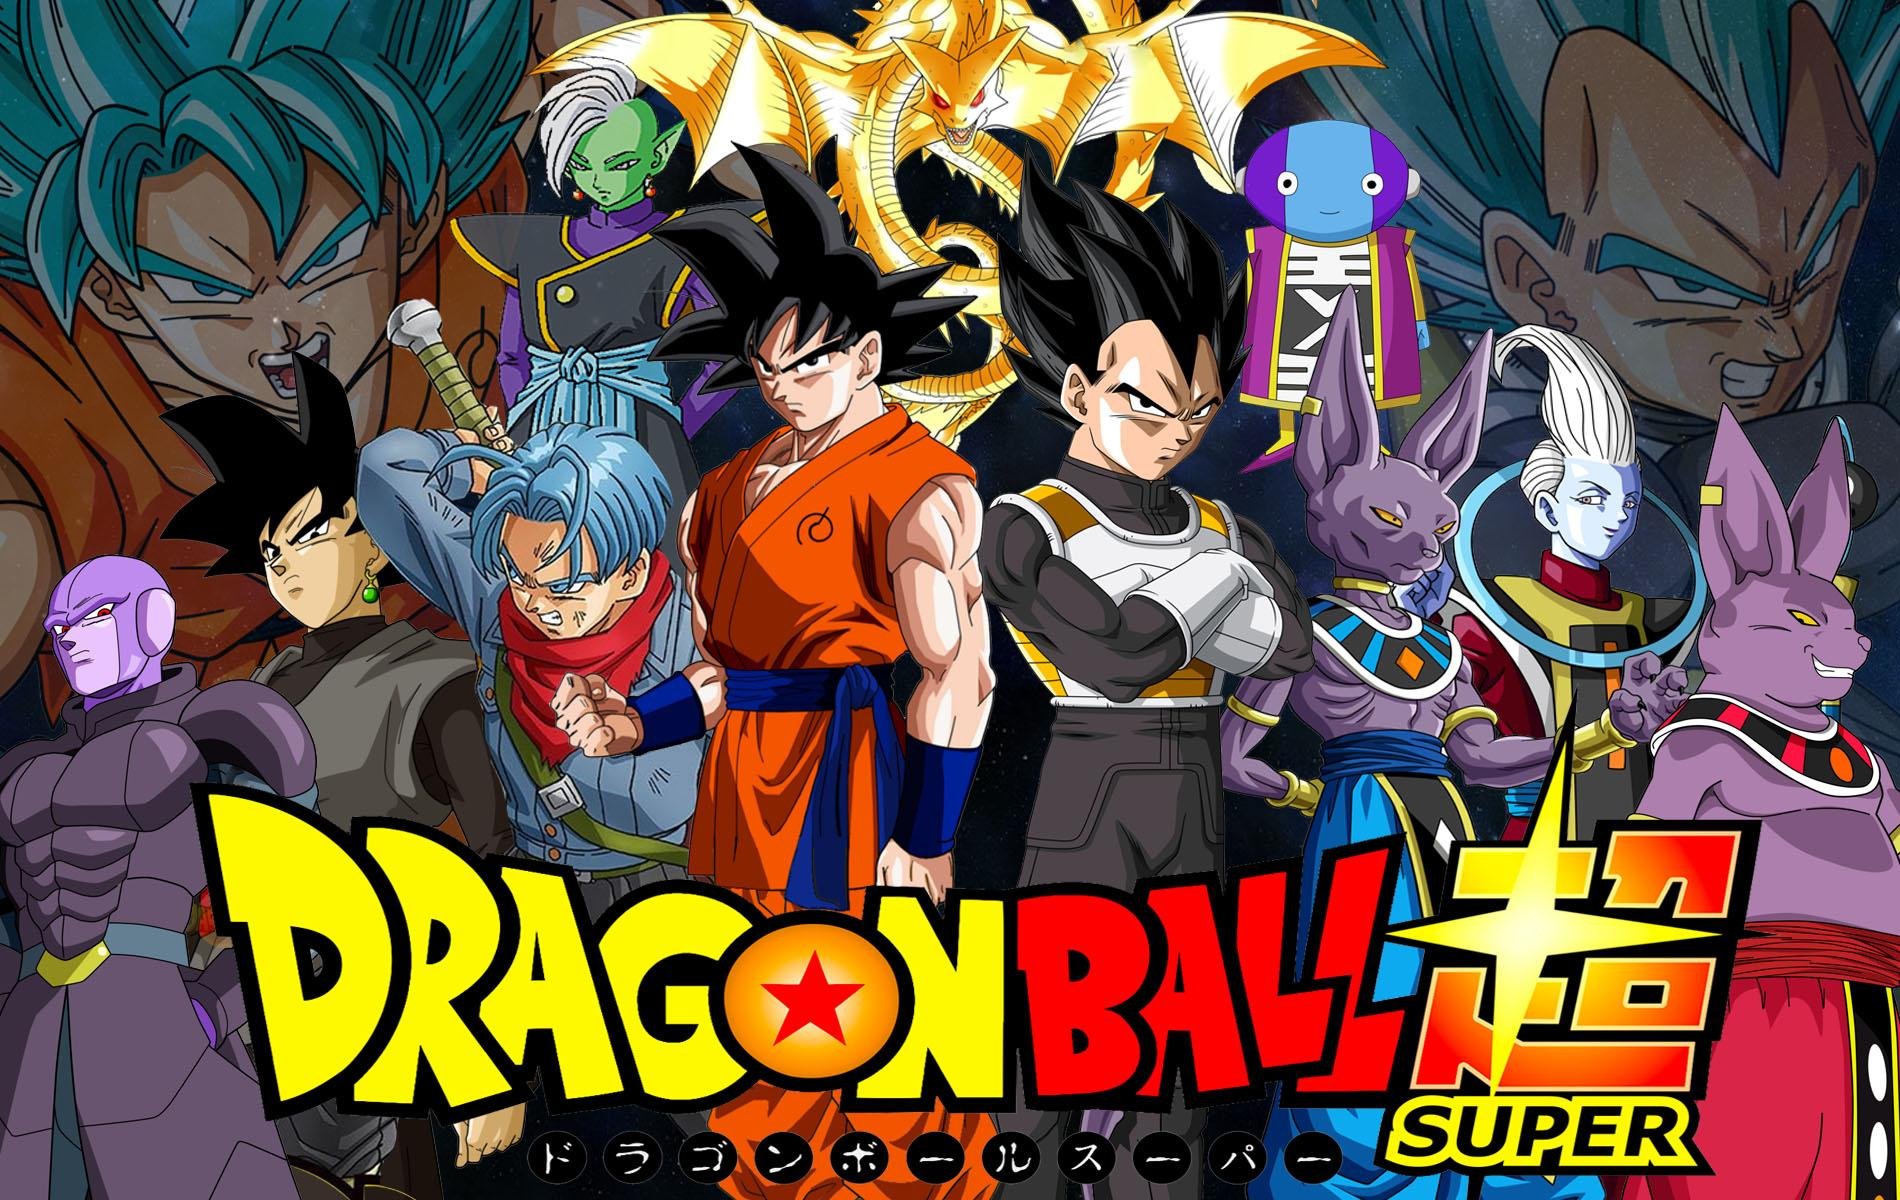 Está acompanhando Dragon Ball Super DUBLADO no Cartoon Network?